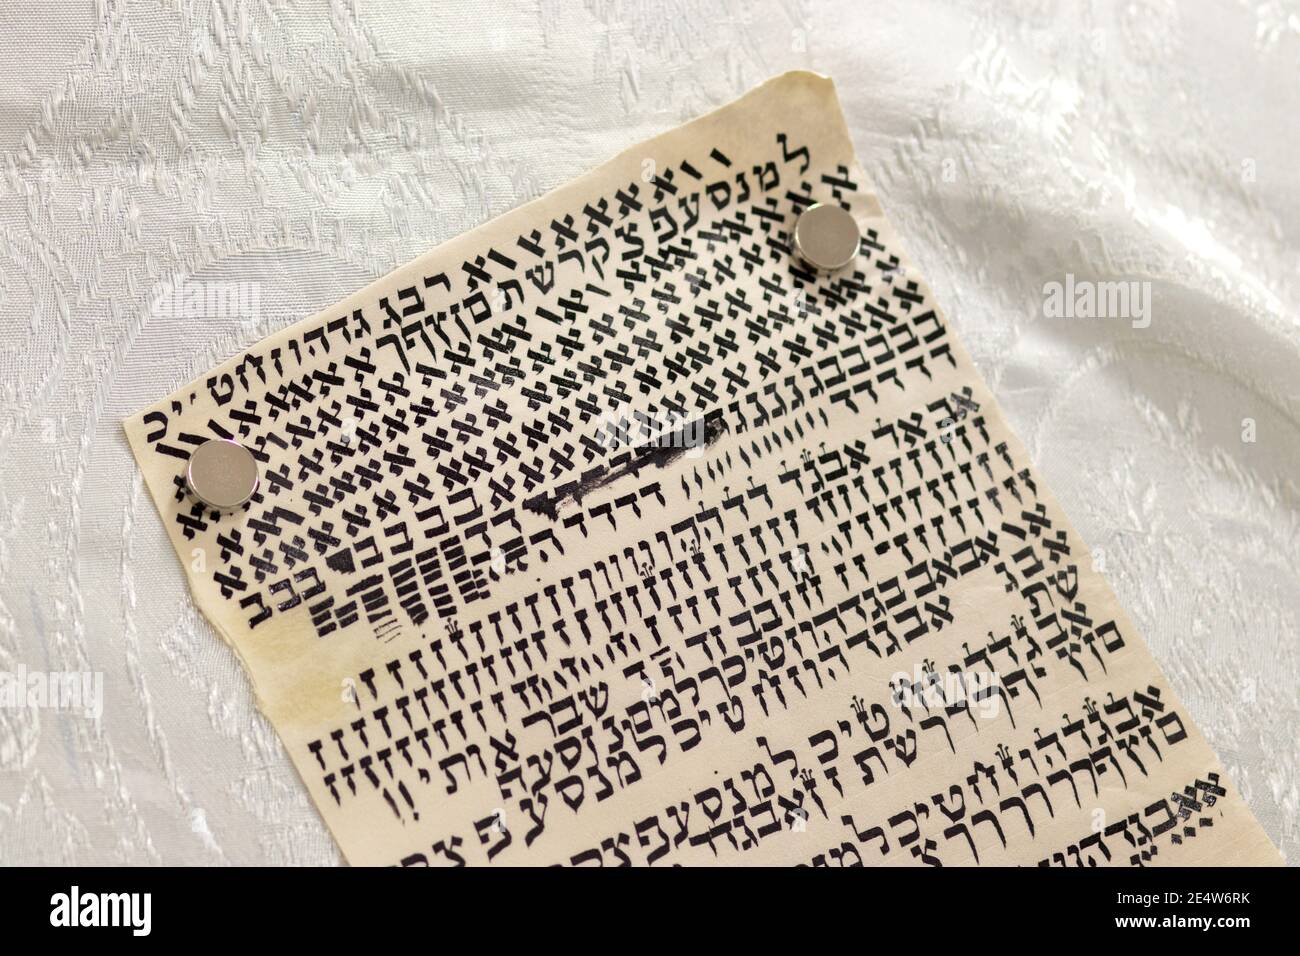 Lettere ebraiche scritte su pergamena, una scritta speciale di un rotolo Torah. (Al redattore - le lettere sono casuali senza significato) Foto Stock